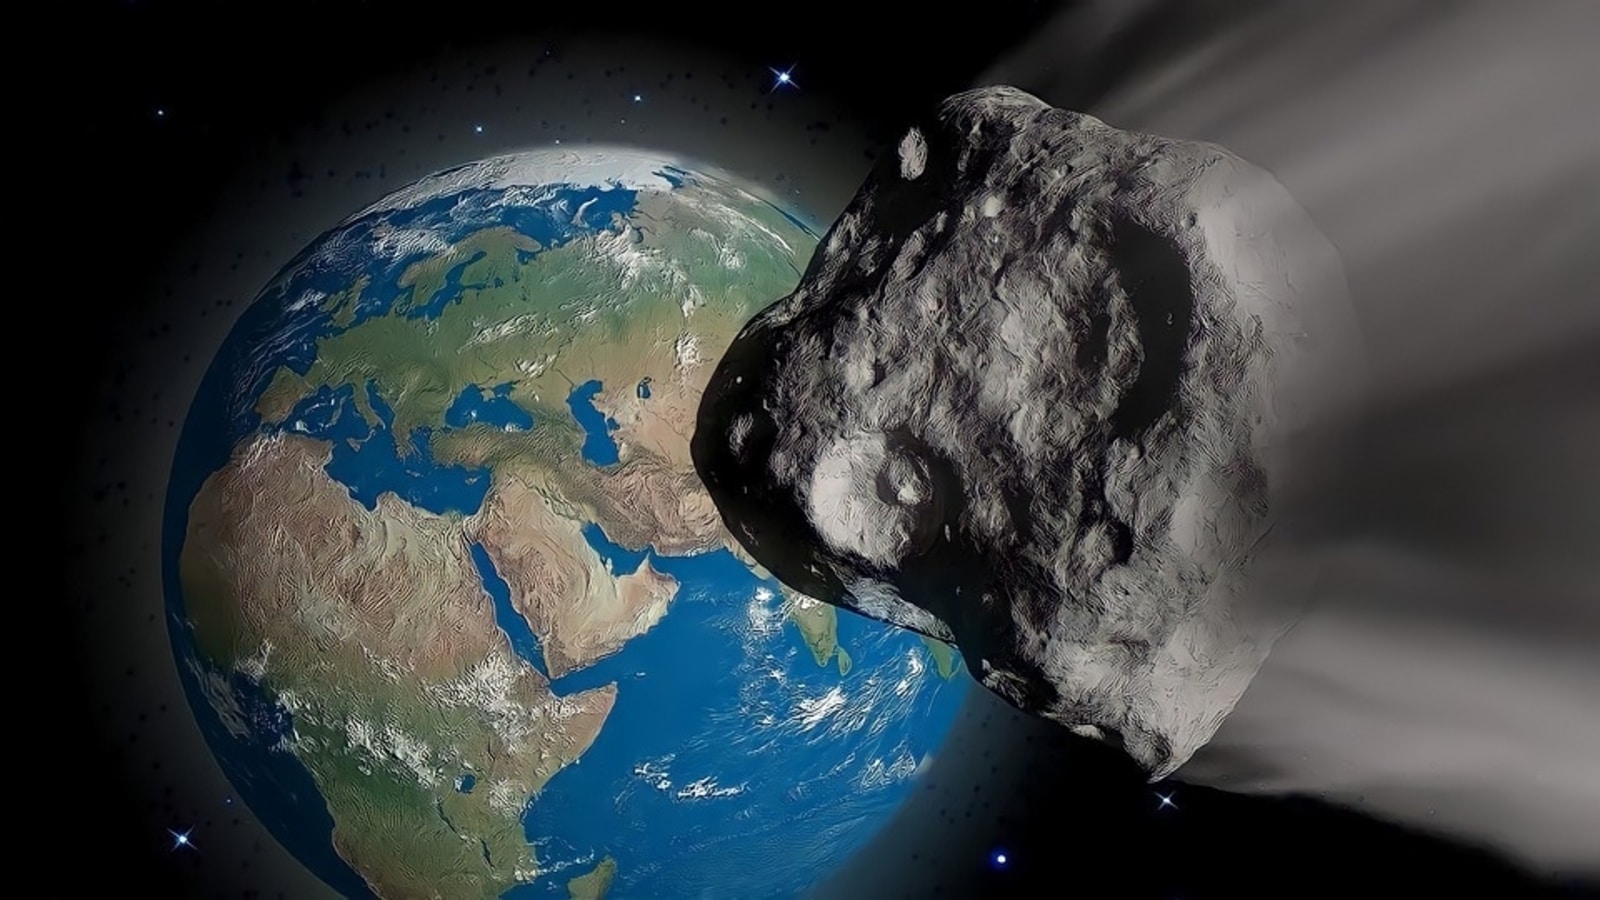 Peringatan Asteroid!  Asteroid seukuran pesawat meluncur menuju Bumi dengan kecepatan 53171 km/jam